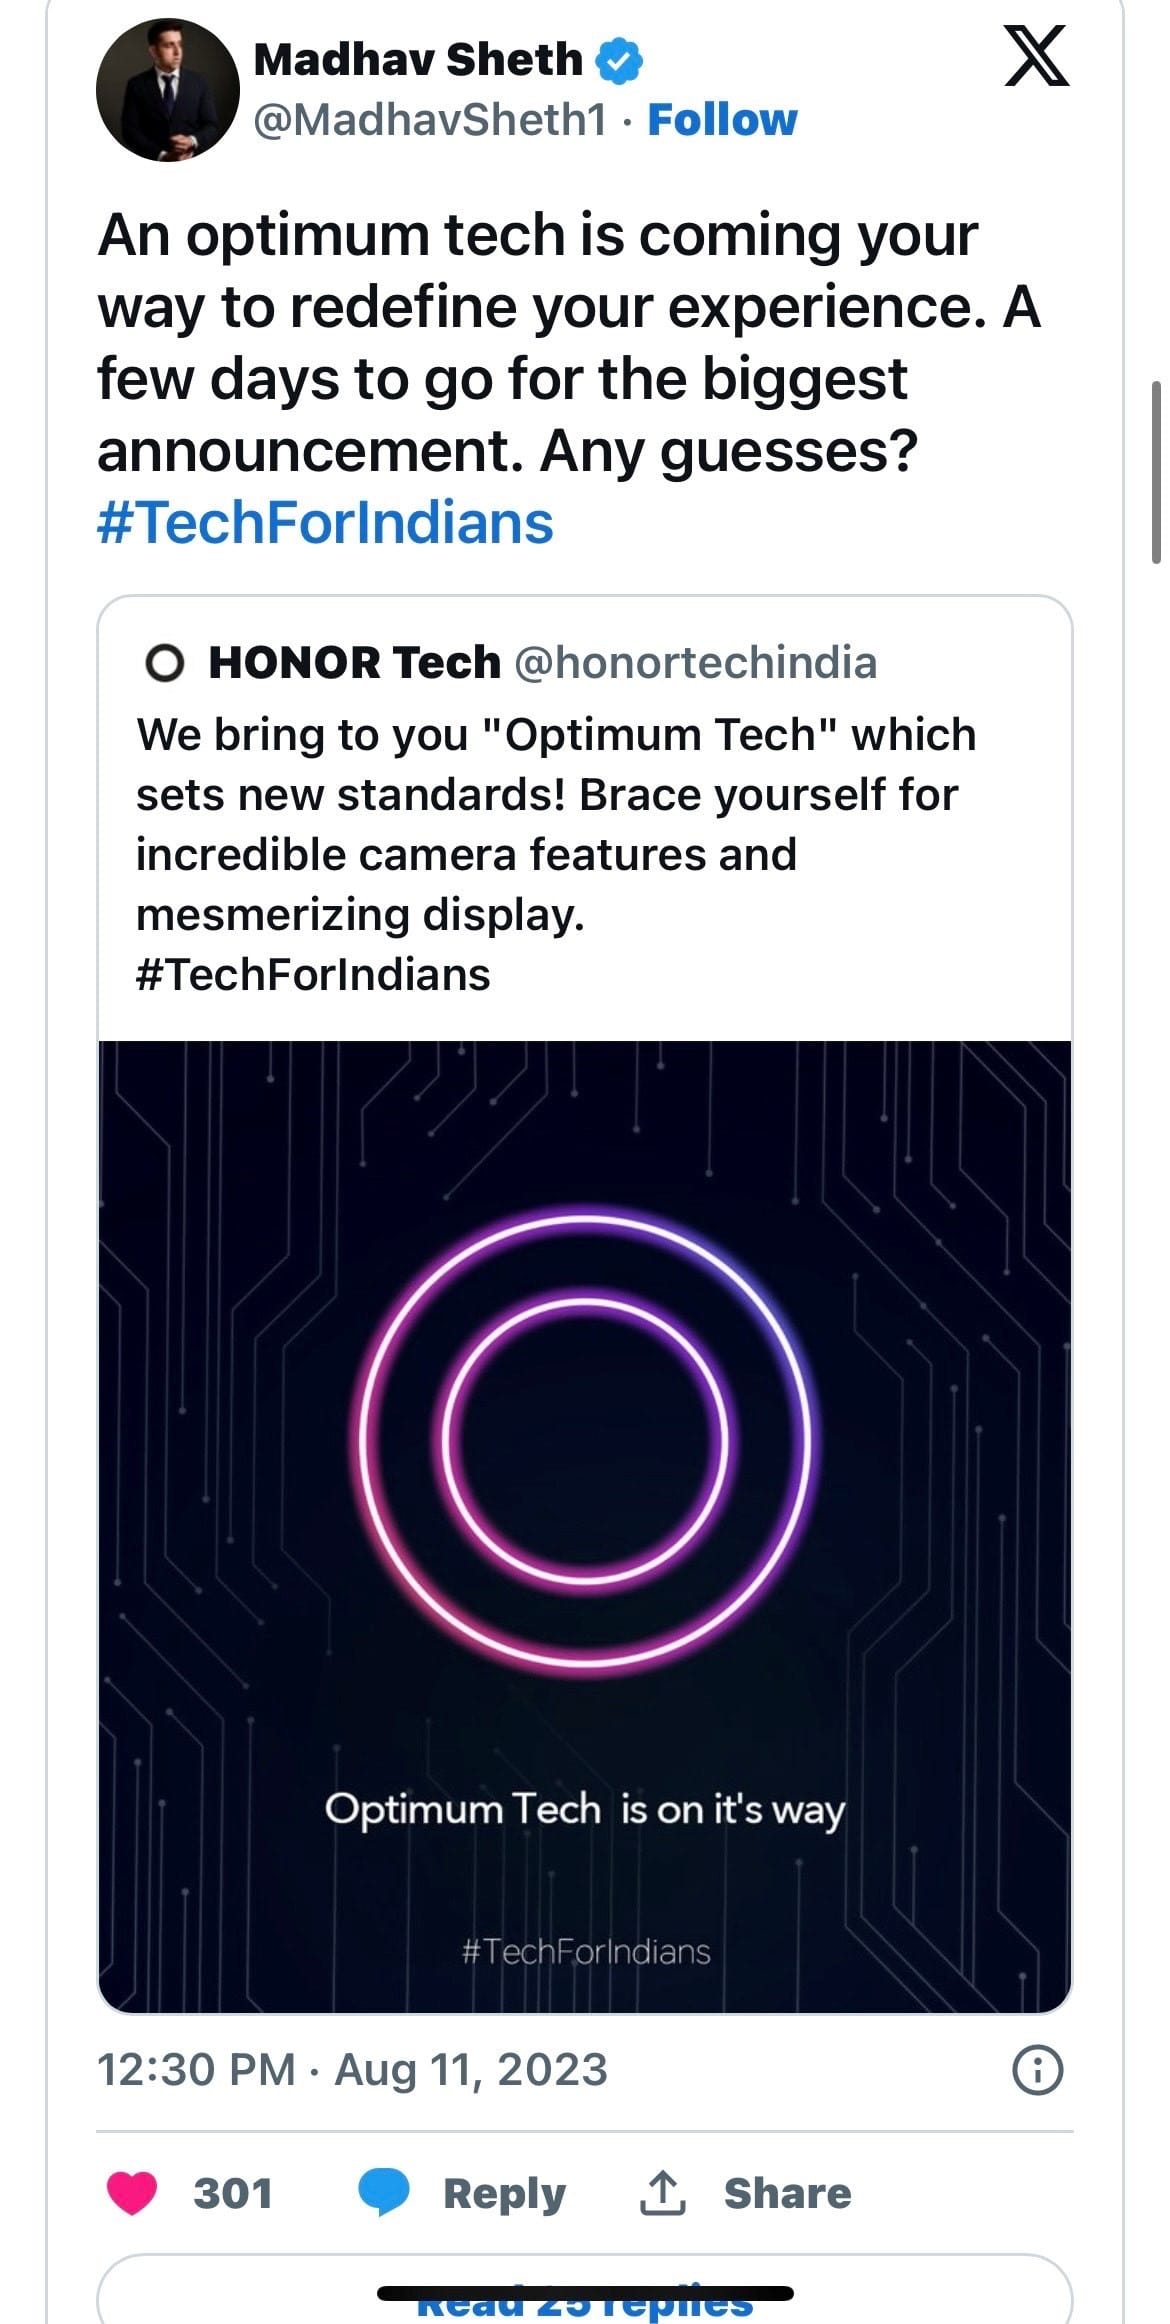 Madhav Sheth Announces Honor Tech Brand